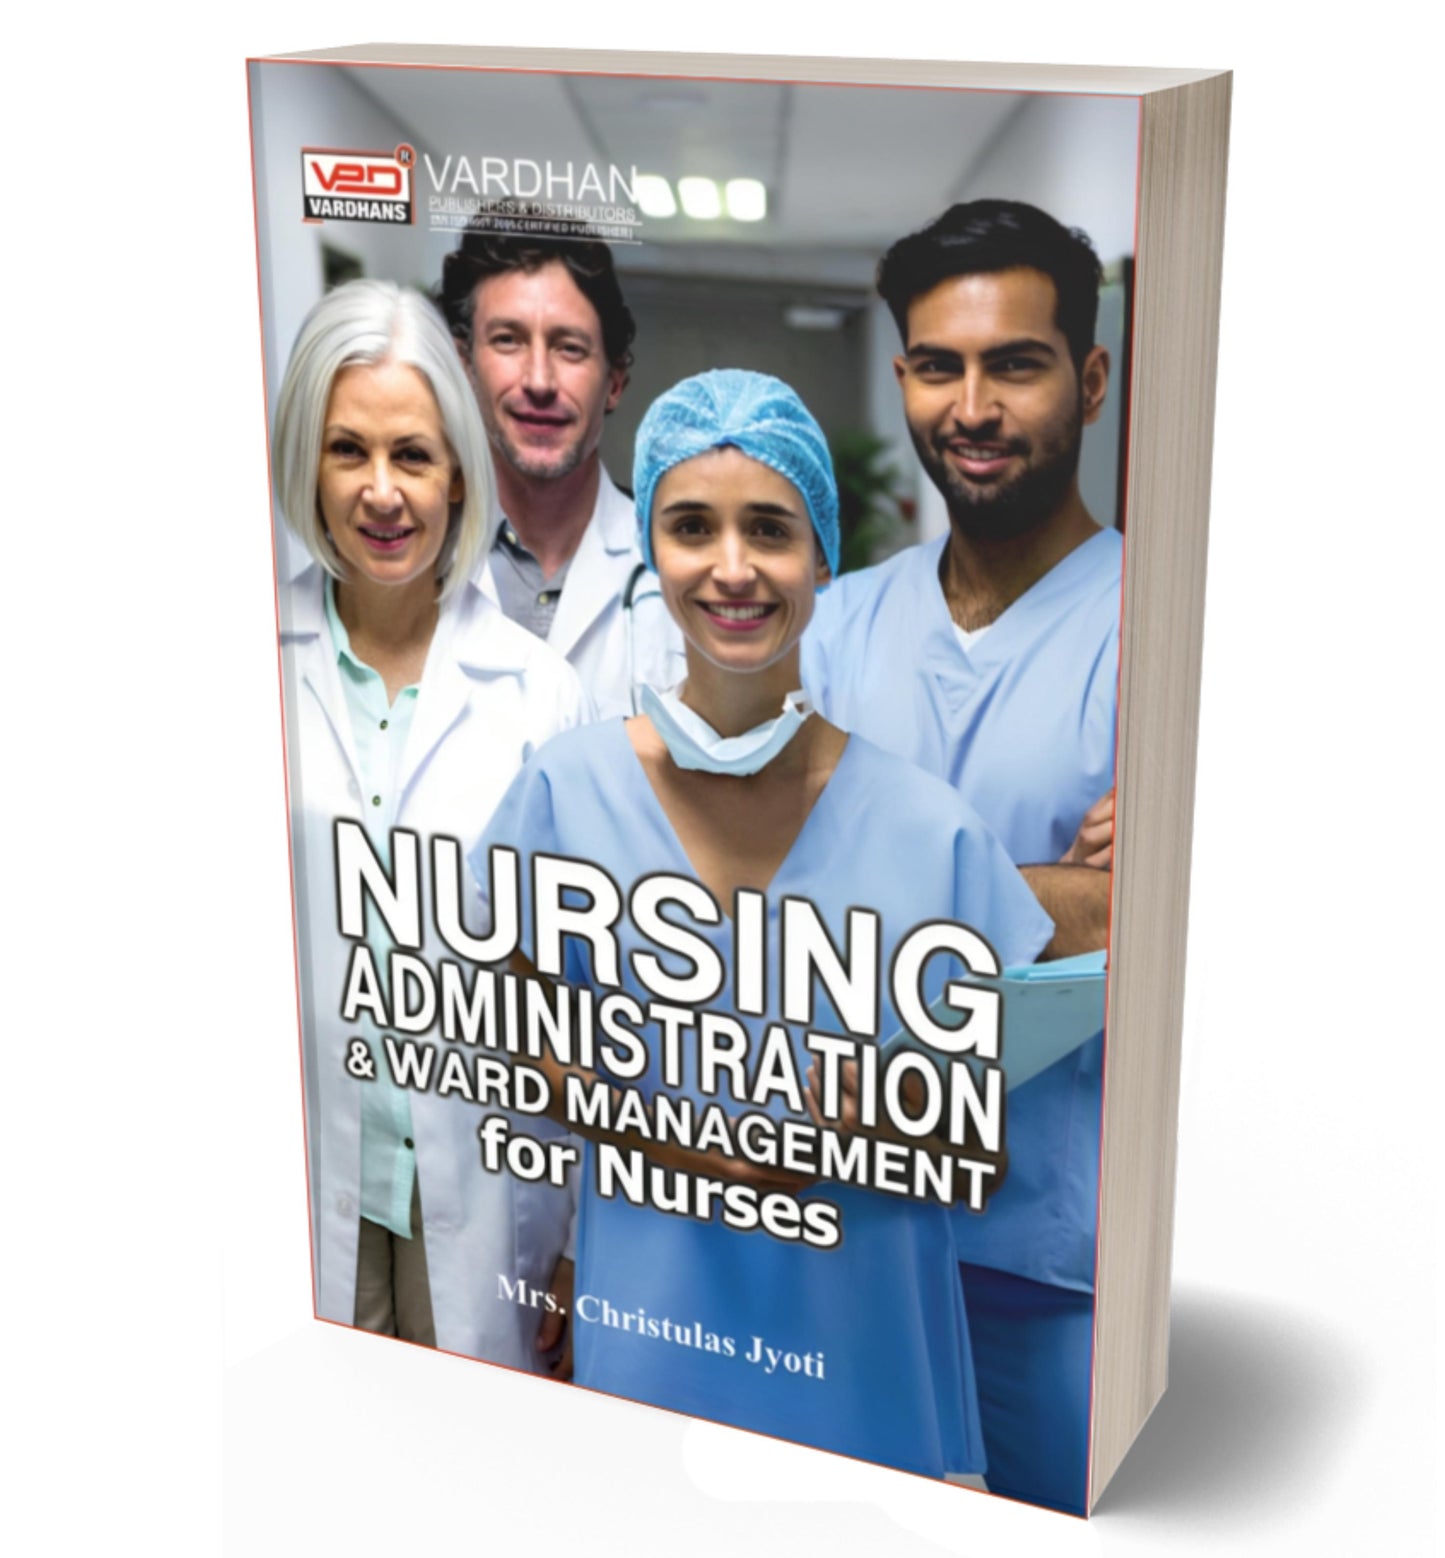 Nursing Administration & Ward Management for Nurses